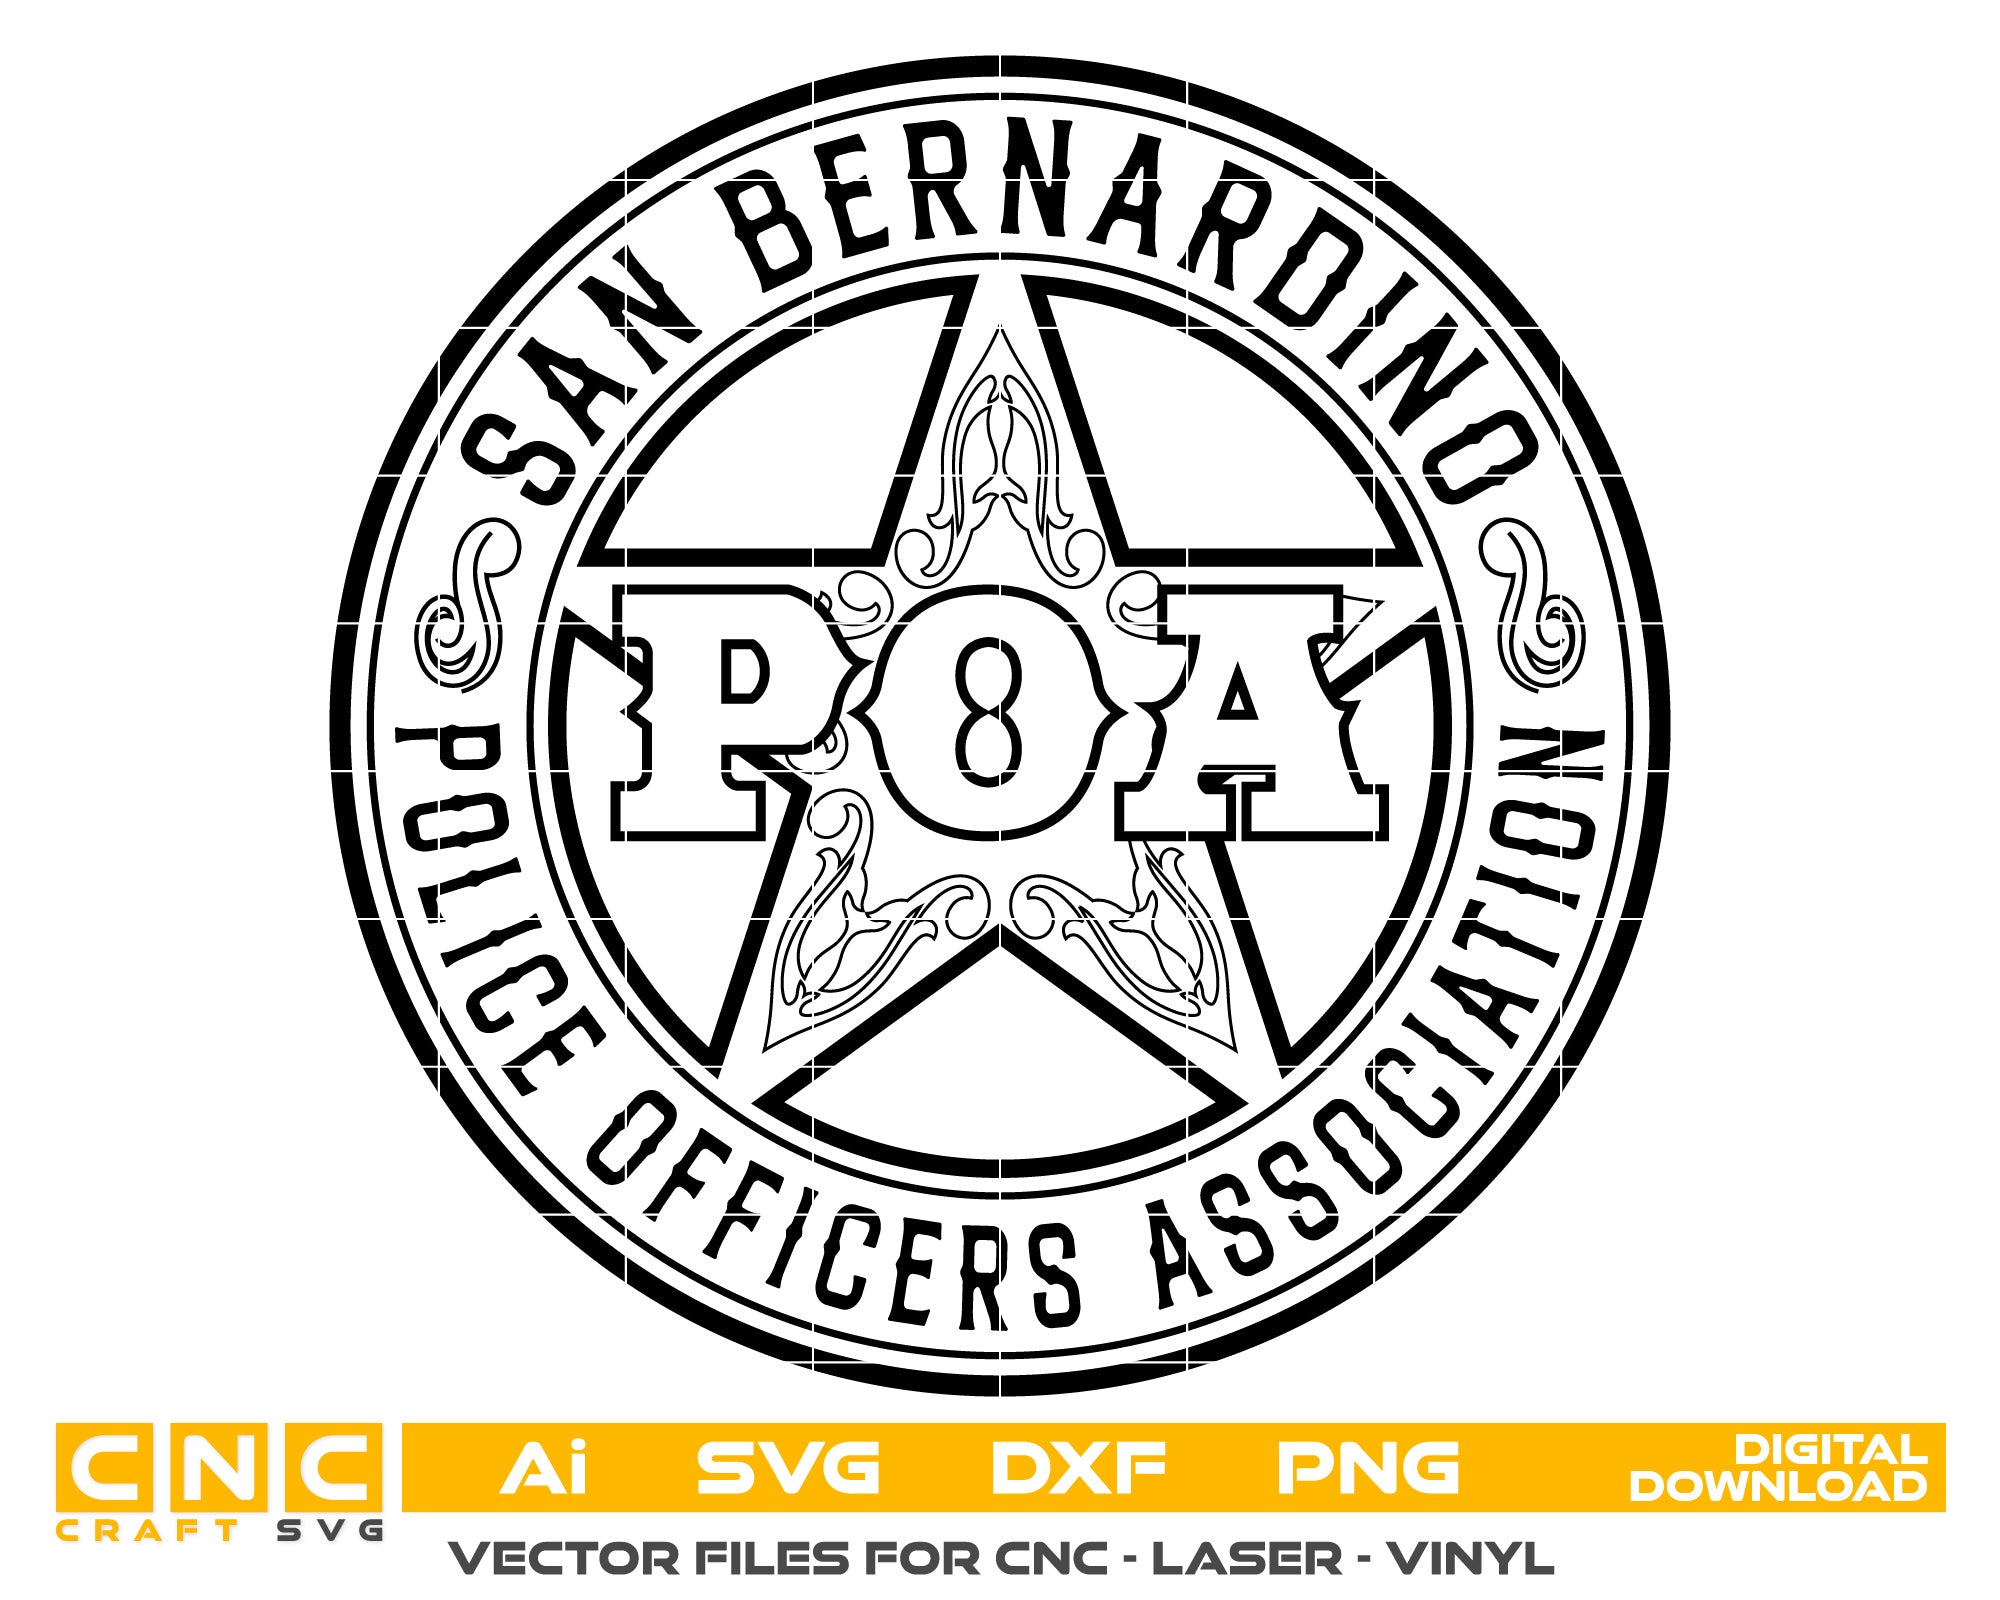 San Bernardino Police Officers Association vector art